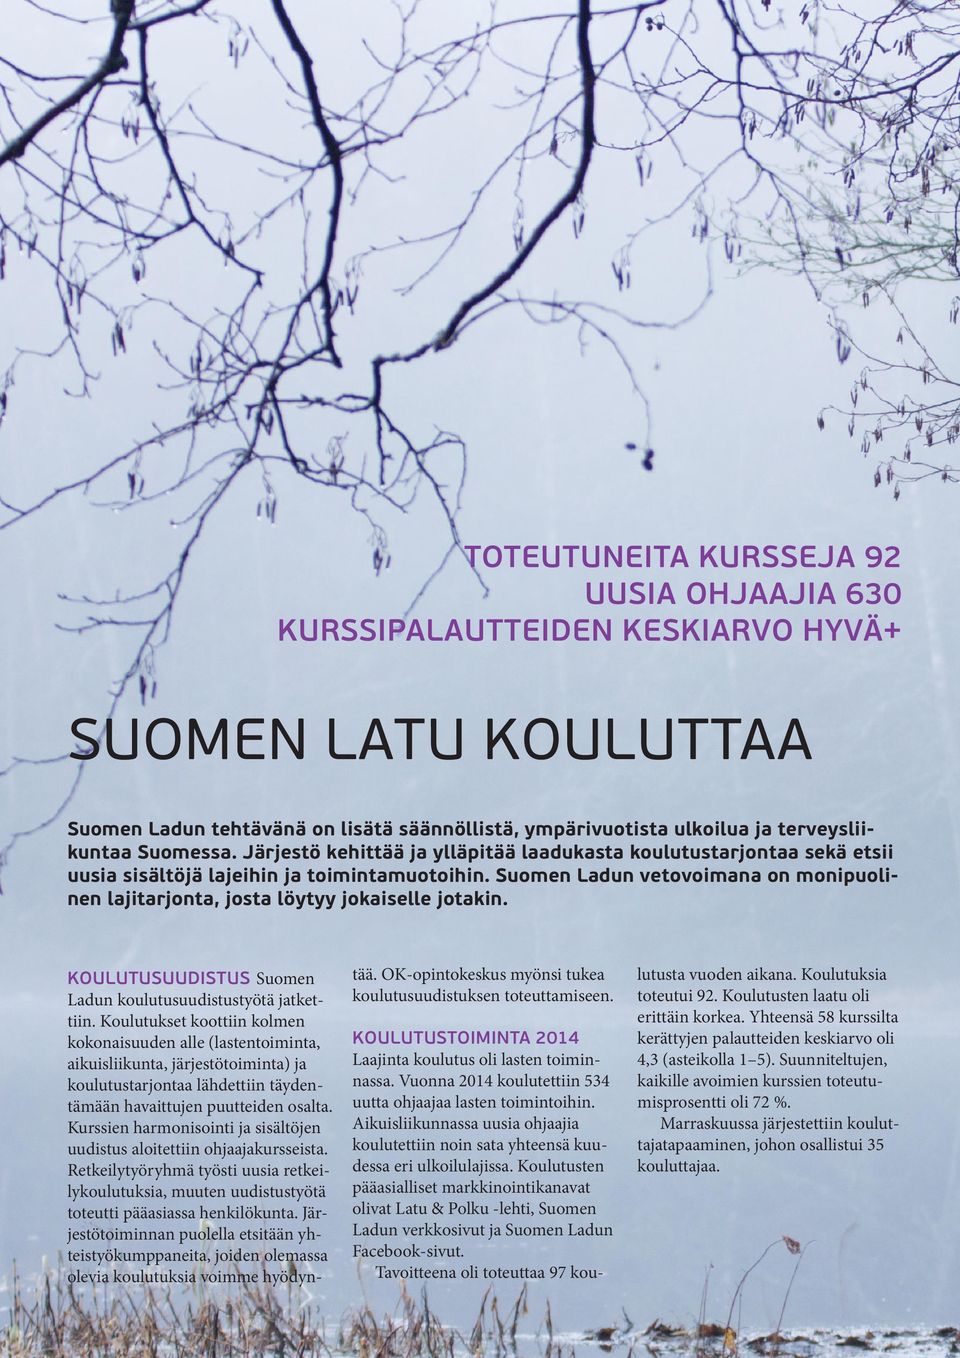 Suomen Ladun vetovoimana on monipuolinen lajitarjonta, josta löytyy jokaiselle jotakin. Koulutusuudistus Suomen Ladun koulutusuudistustyötä jatkettiin.